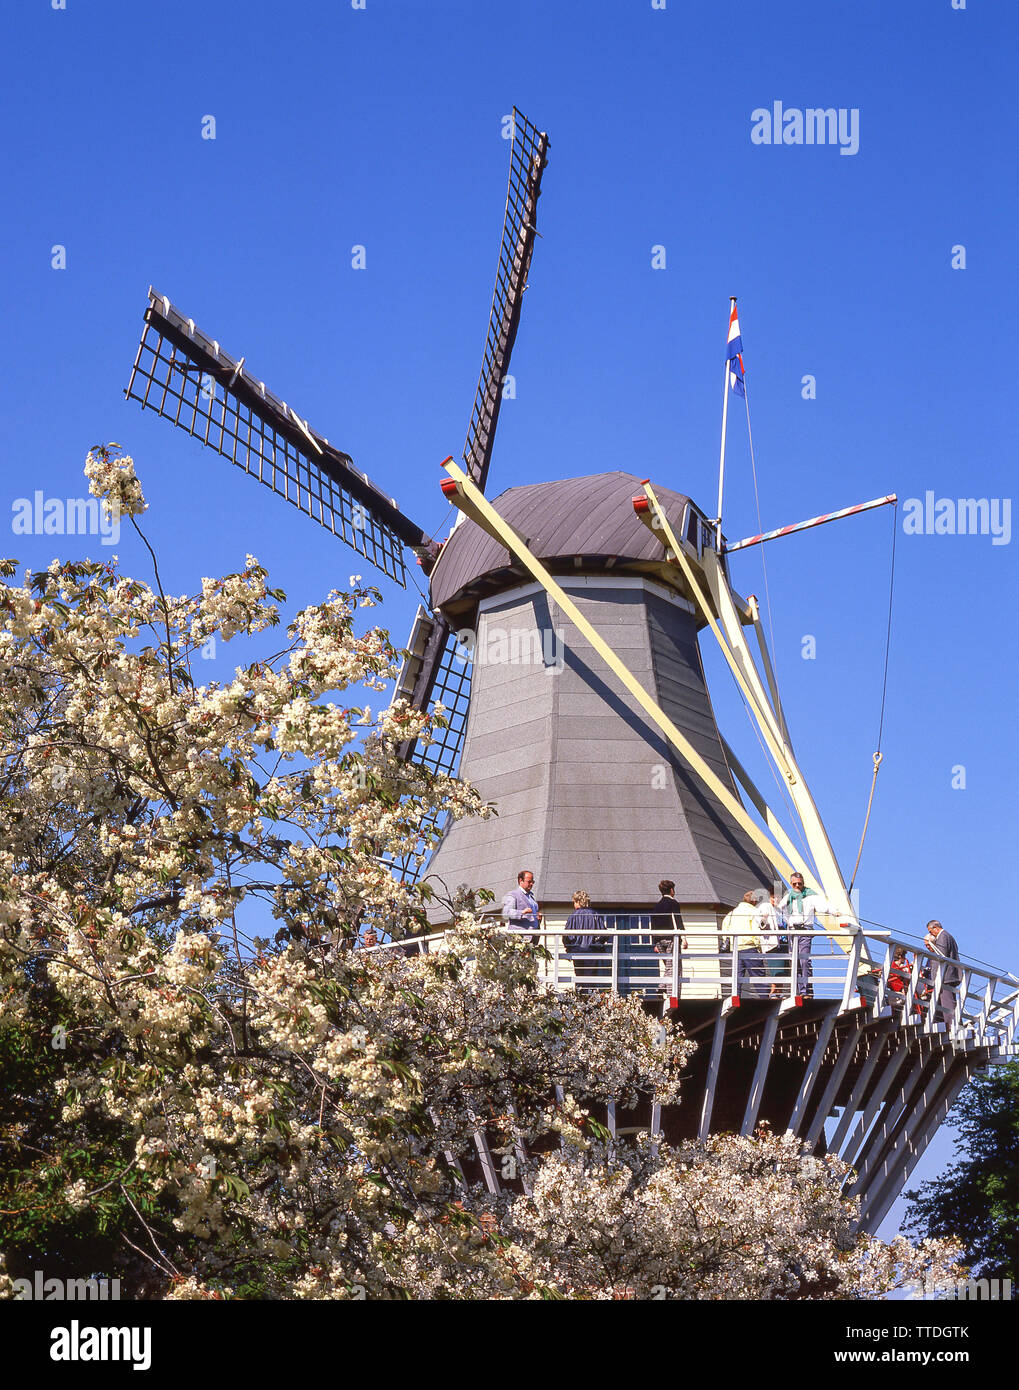 Mulino a vento in giardini Keukenhof Lisse, Zuid-Holland, il Regno dei Paesi Bassi Foto Stock